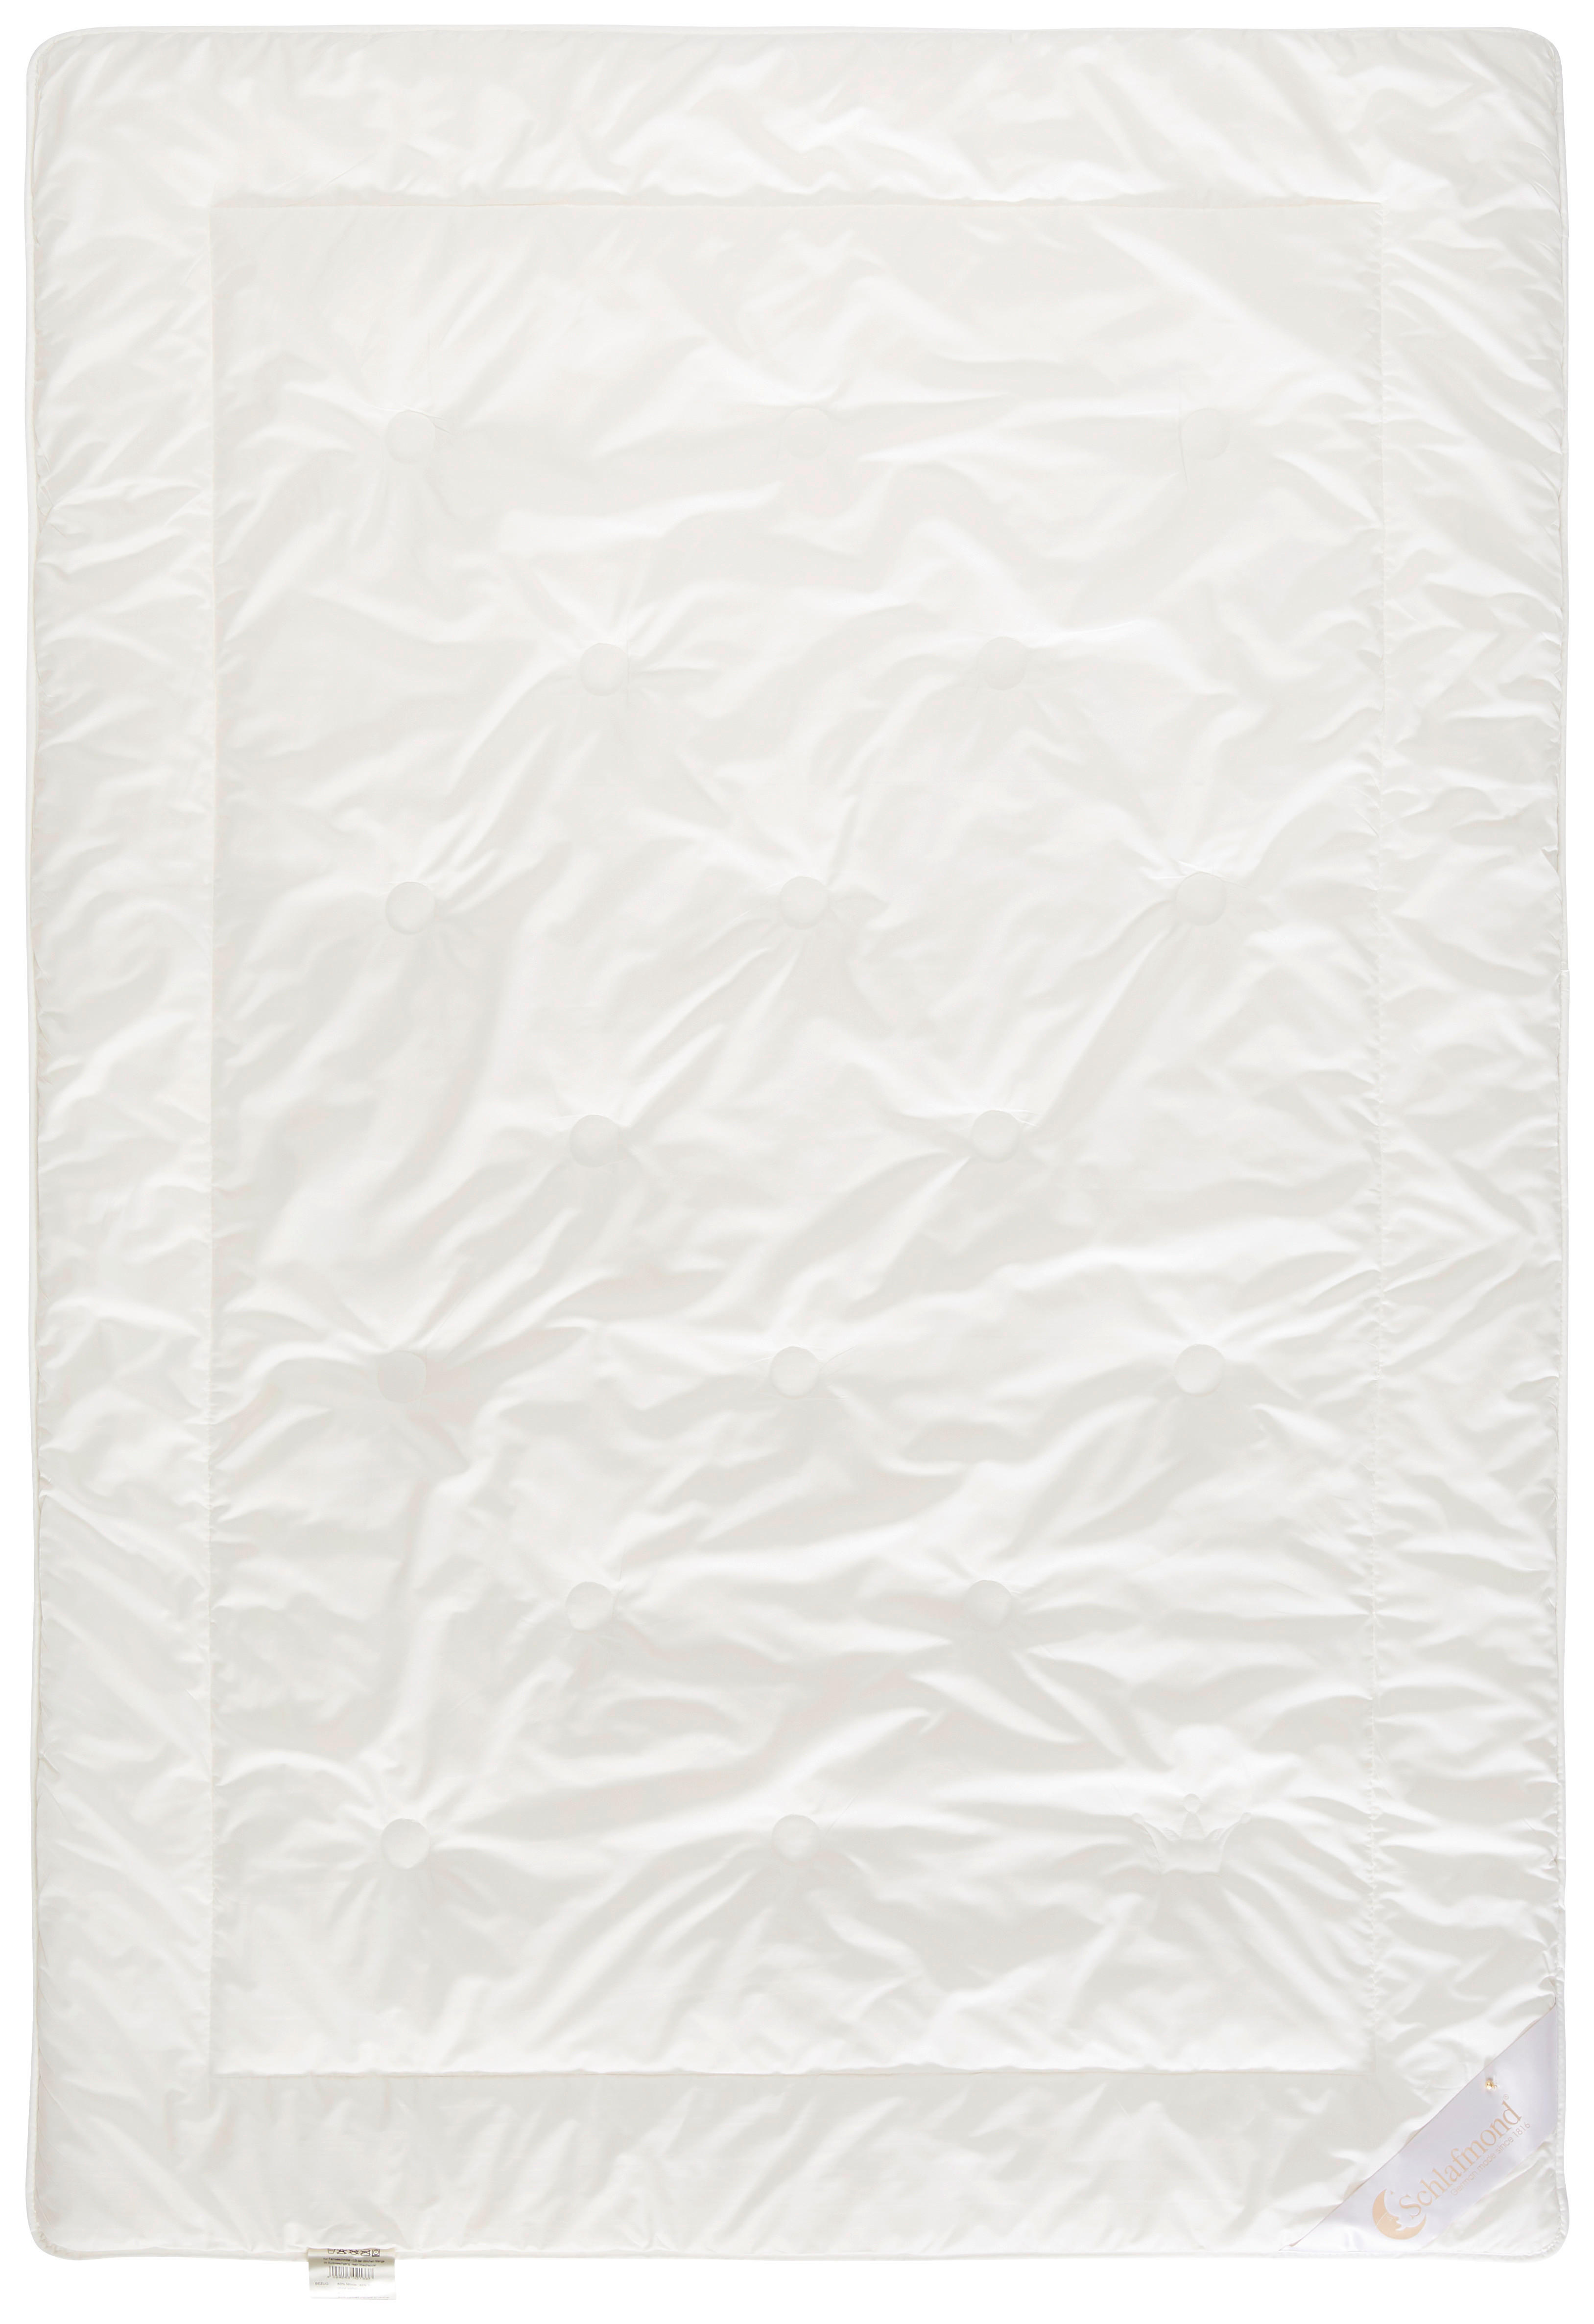 SOMMERDECKE 140/200 cm  - Weiß, Basics (140/200cm) - Schlafmond